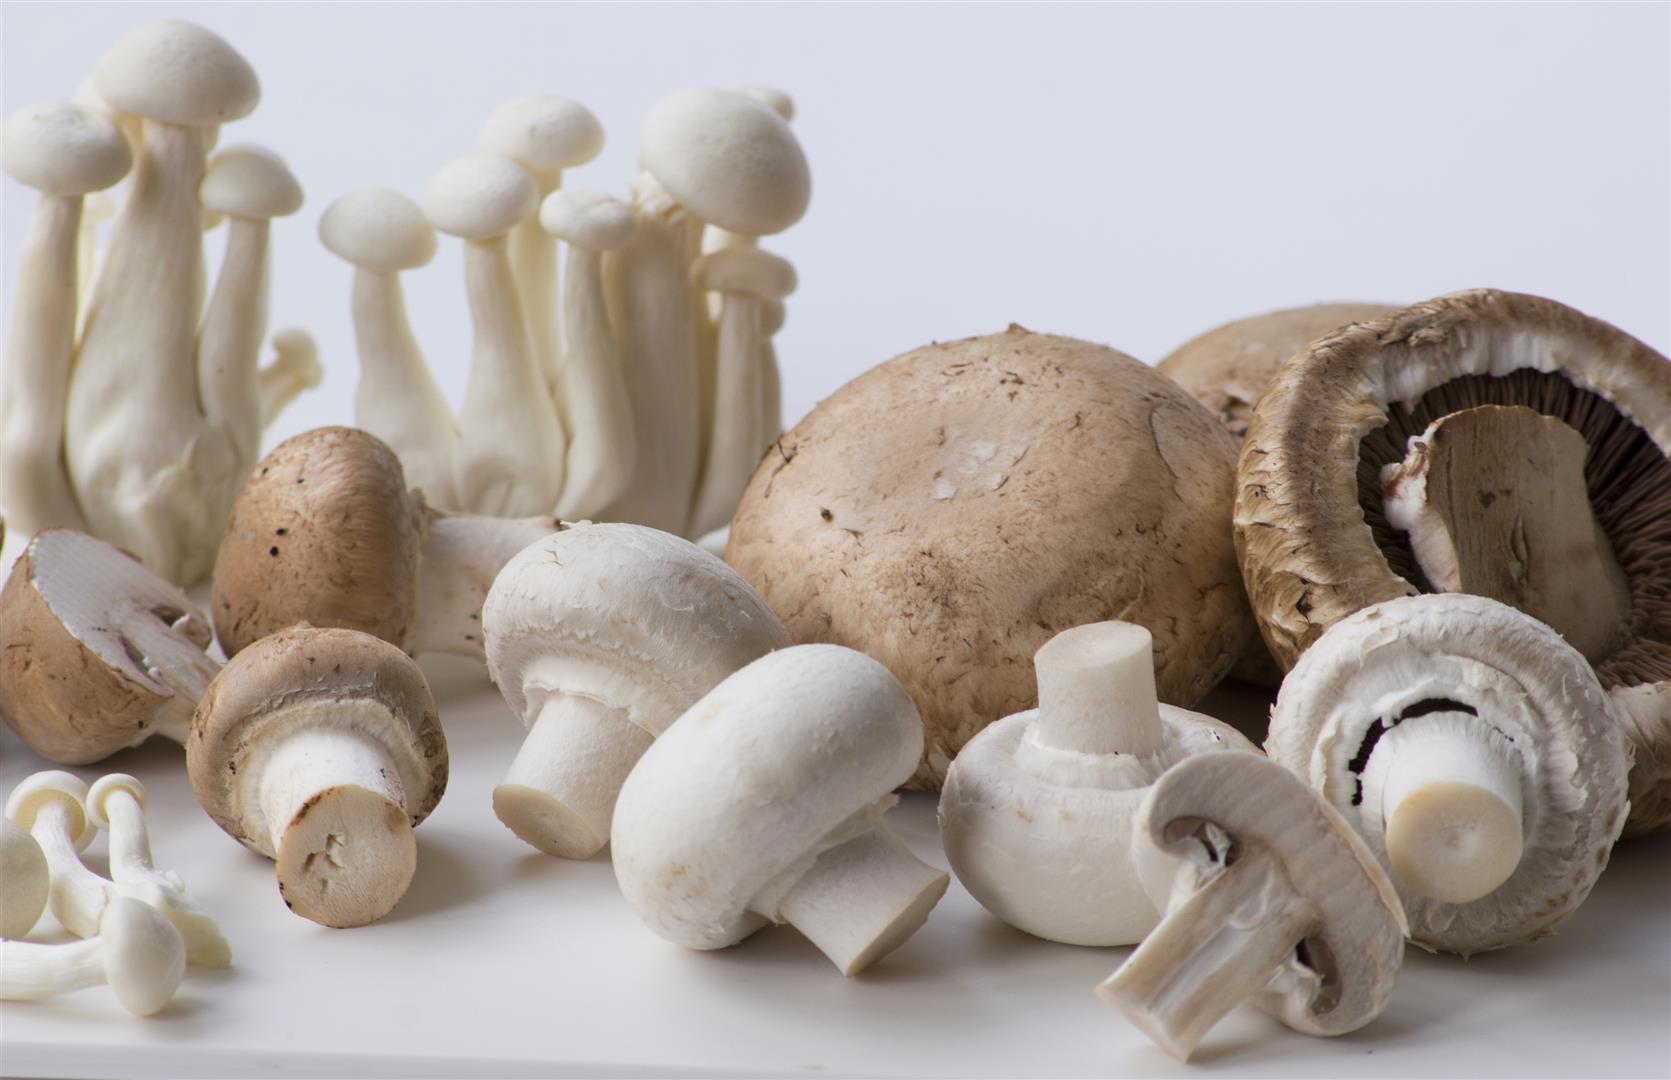 Грибная из замороженных грибов. Самый ароматный гриб. Шампиньоны с белыми корешками. Шампиньон спорт. Шампиньоны на нитке.